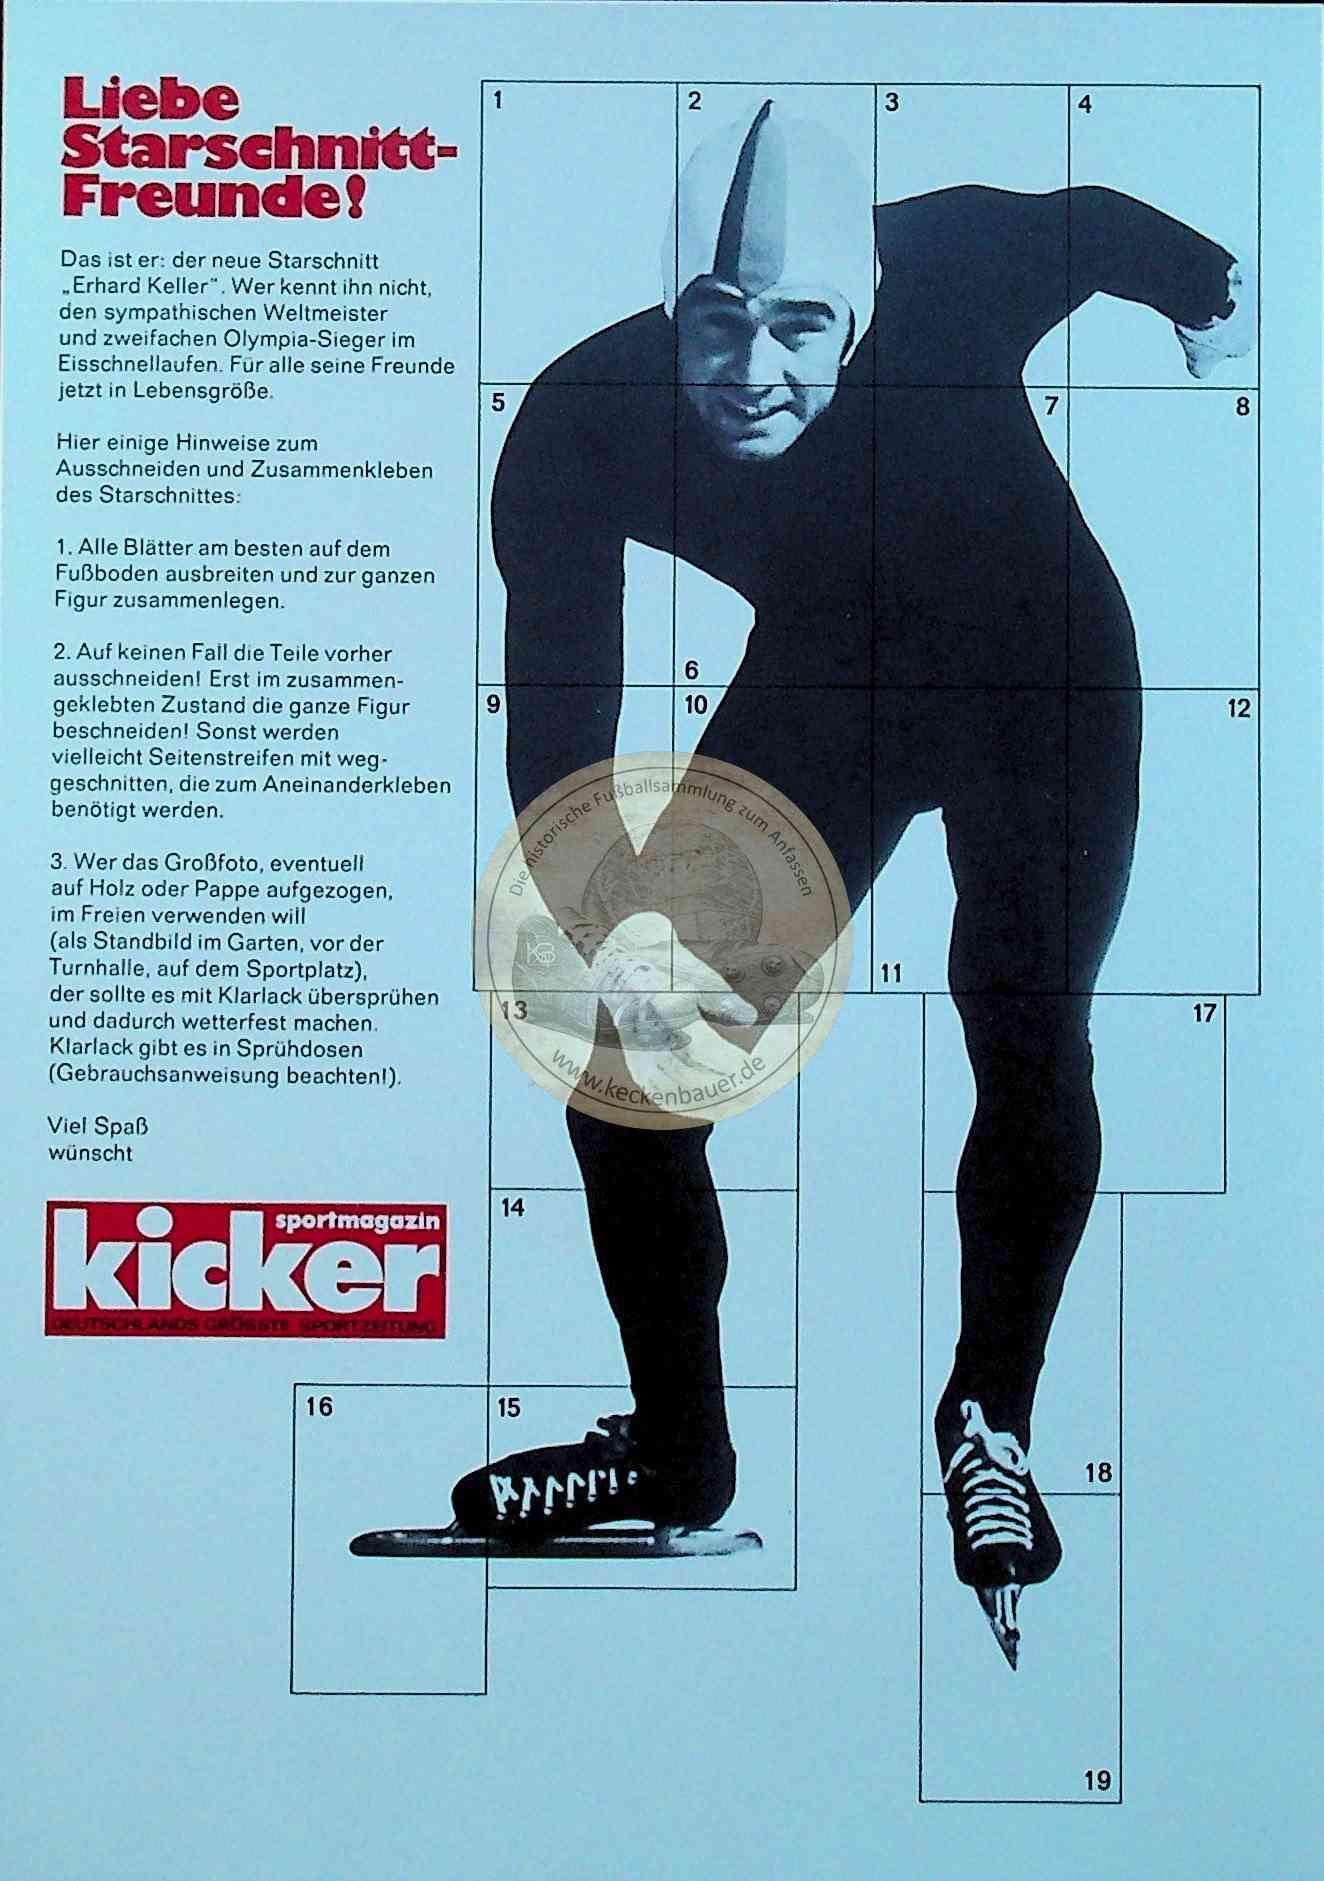 Kicker Starschnitt Erhard Keller (Eisschnelllauf)